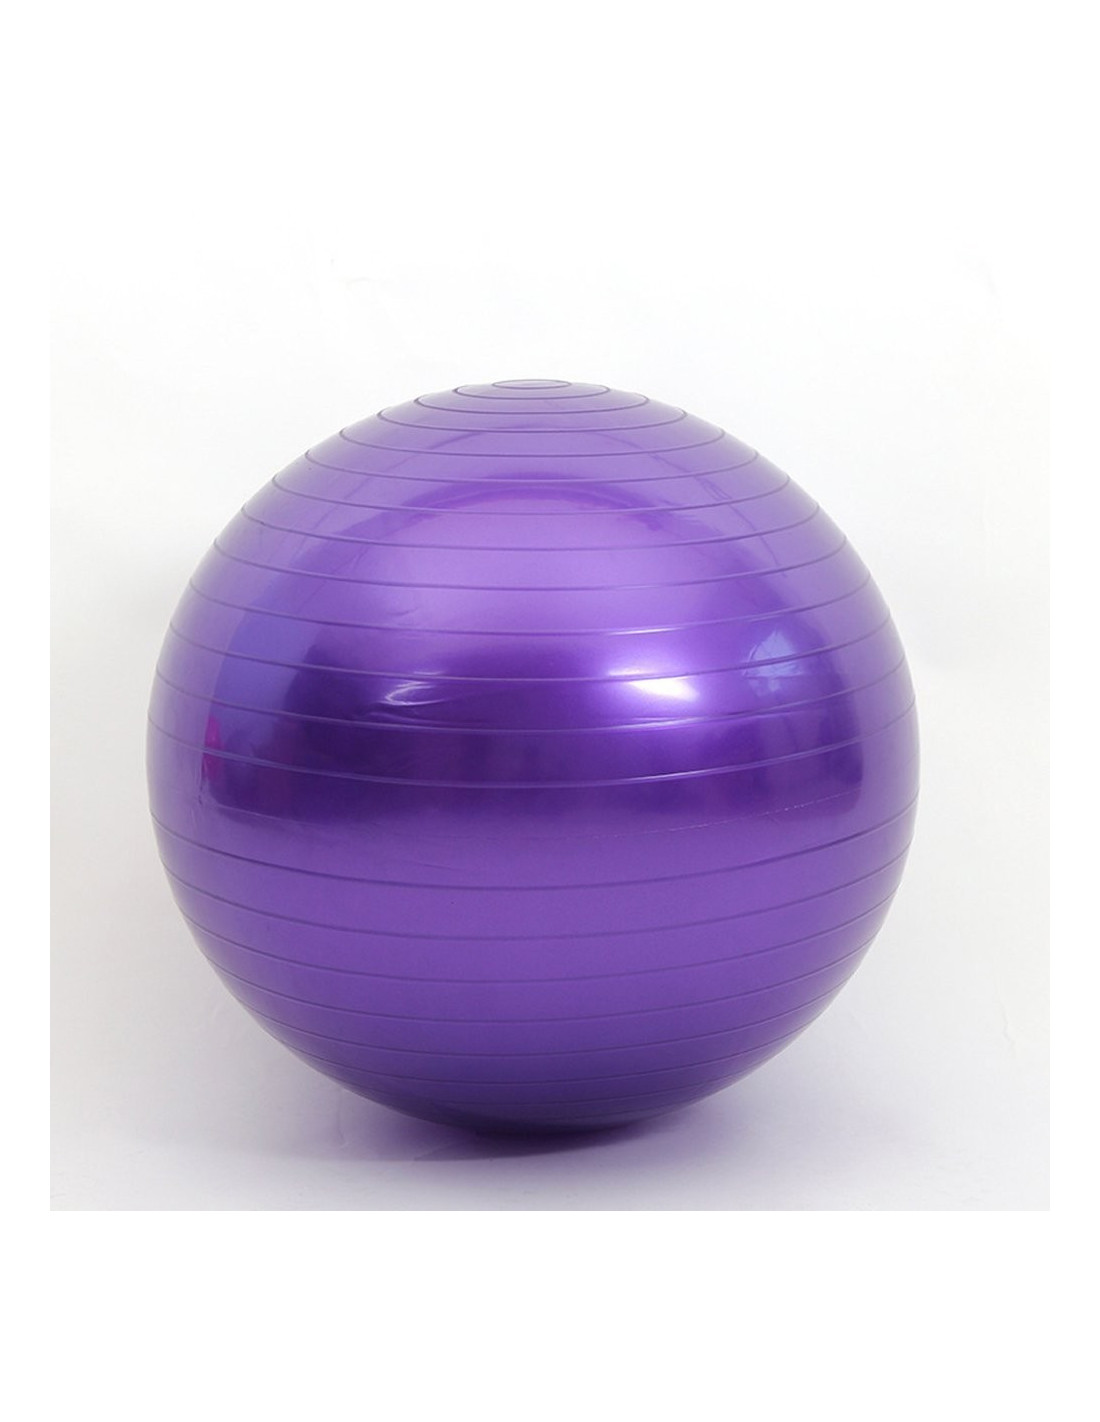 Ballon de Gym, d'Exercices Fitness, Grossesse, Pilates, Yoga, Ballon  d'Equilibre D. 65 cm en PVC Anti-Eclatement (Bleu) - D-Work